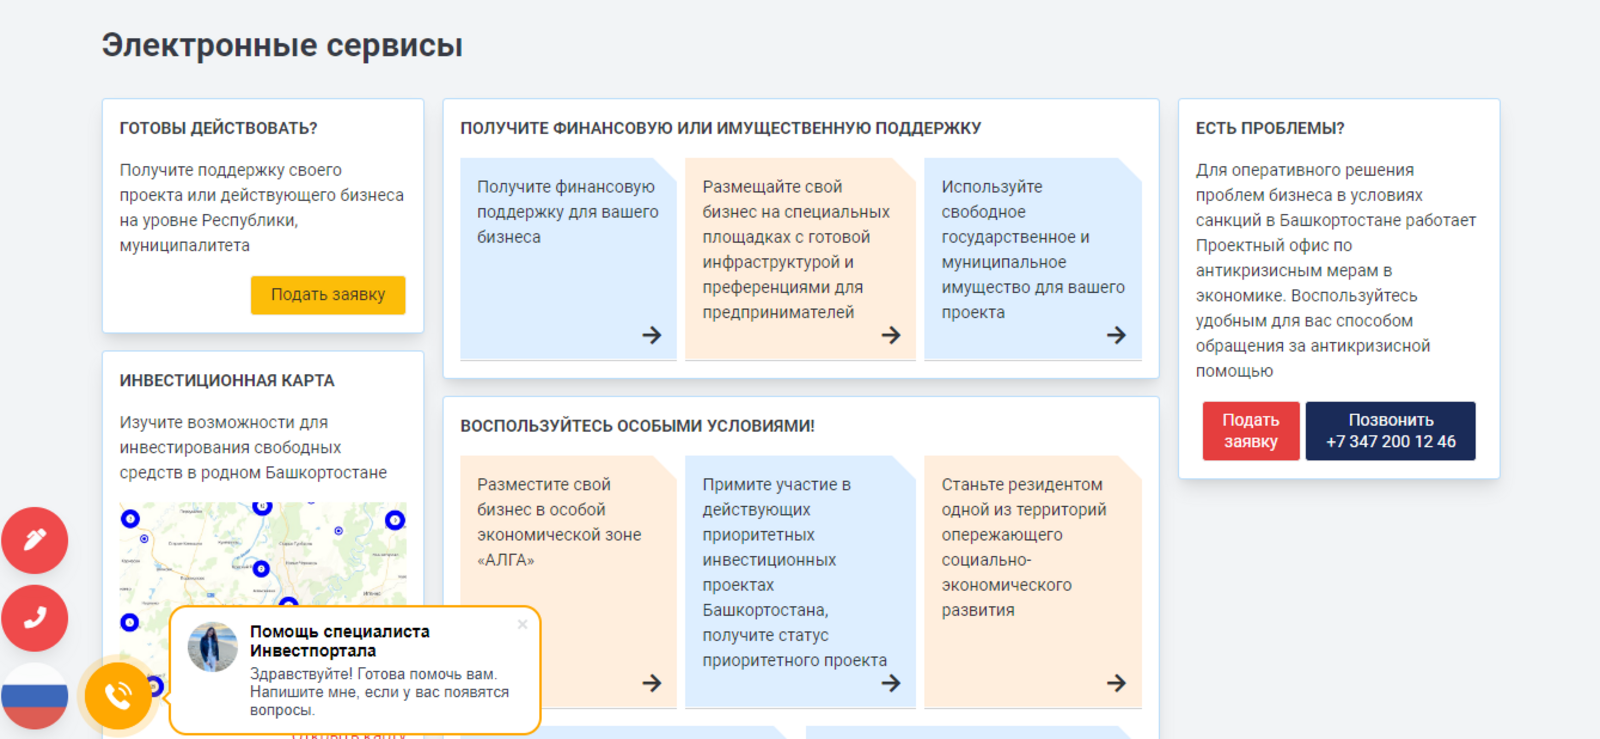 В Башкирии ознакомиться с новыми инструкциями для предпринимателей можно на сайте investrb.ru